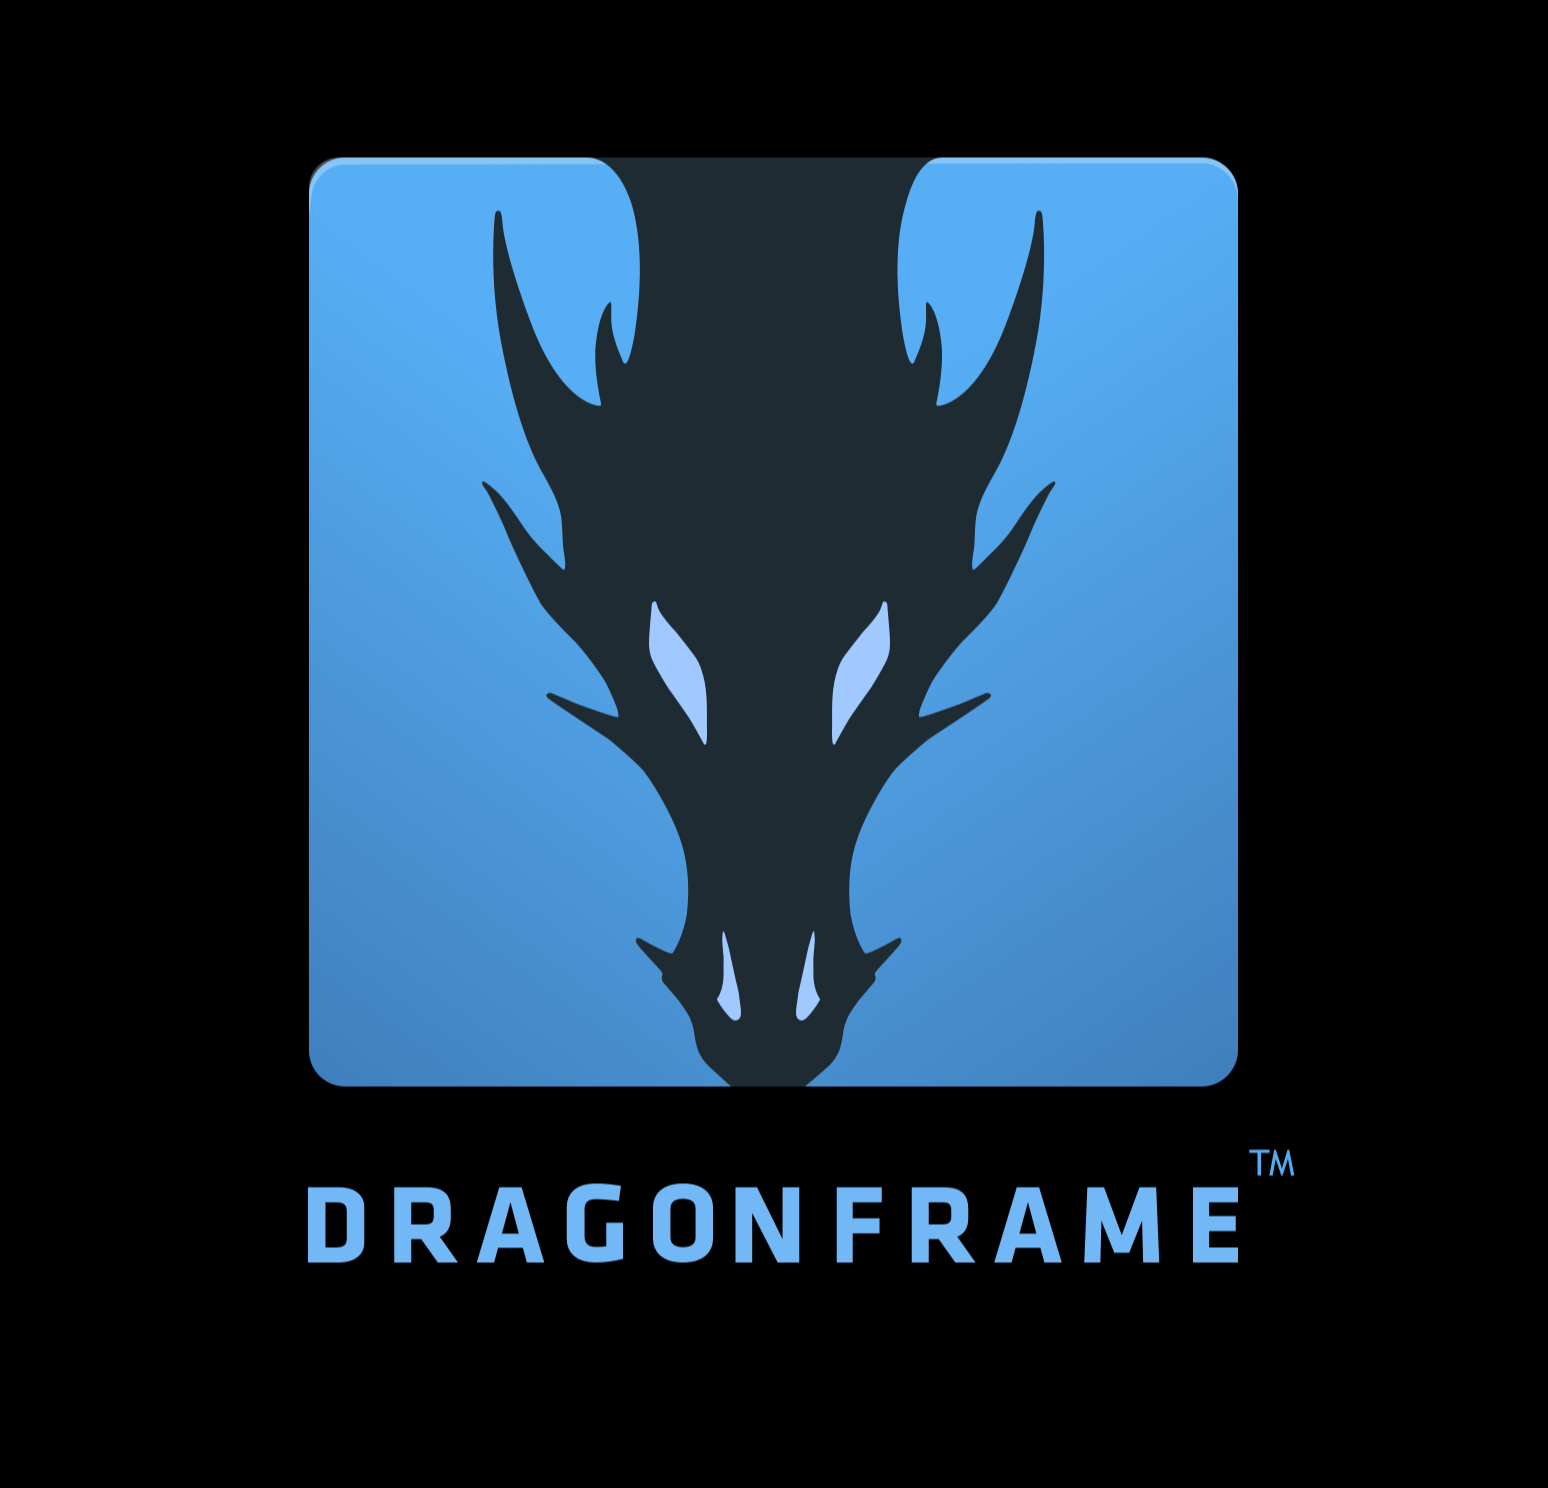 dragonframe 3.6 serial number